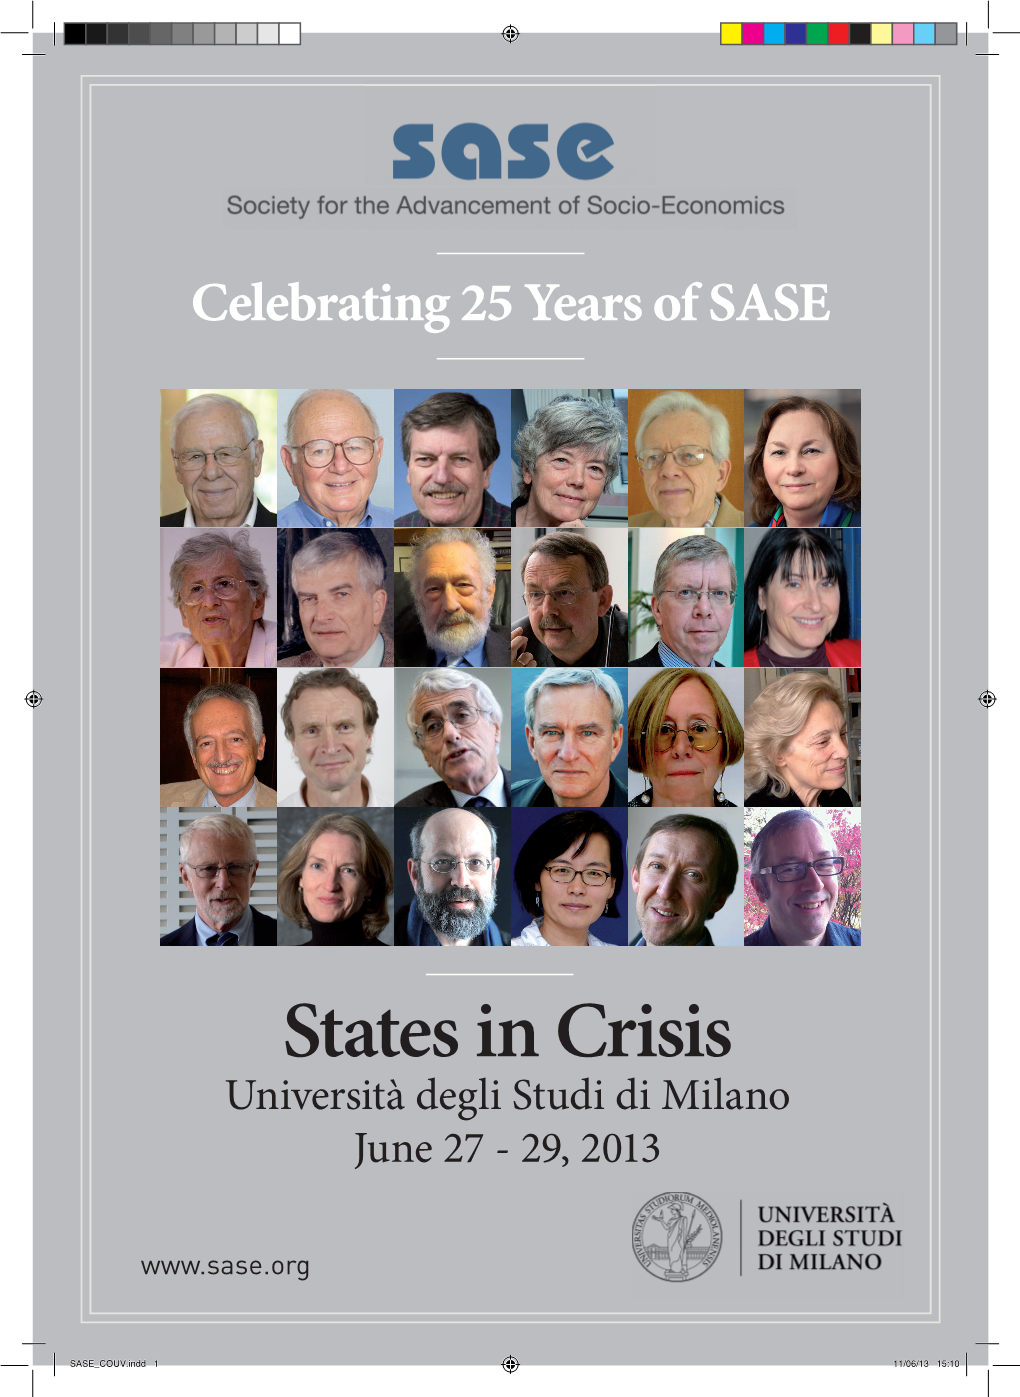 States in Crisis Università Degli Studi Di Milano June 27 - 29, 2013